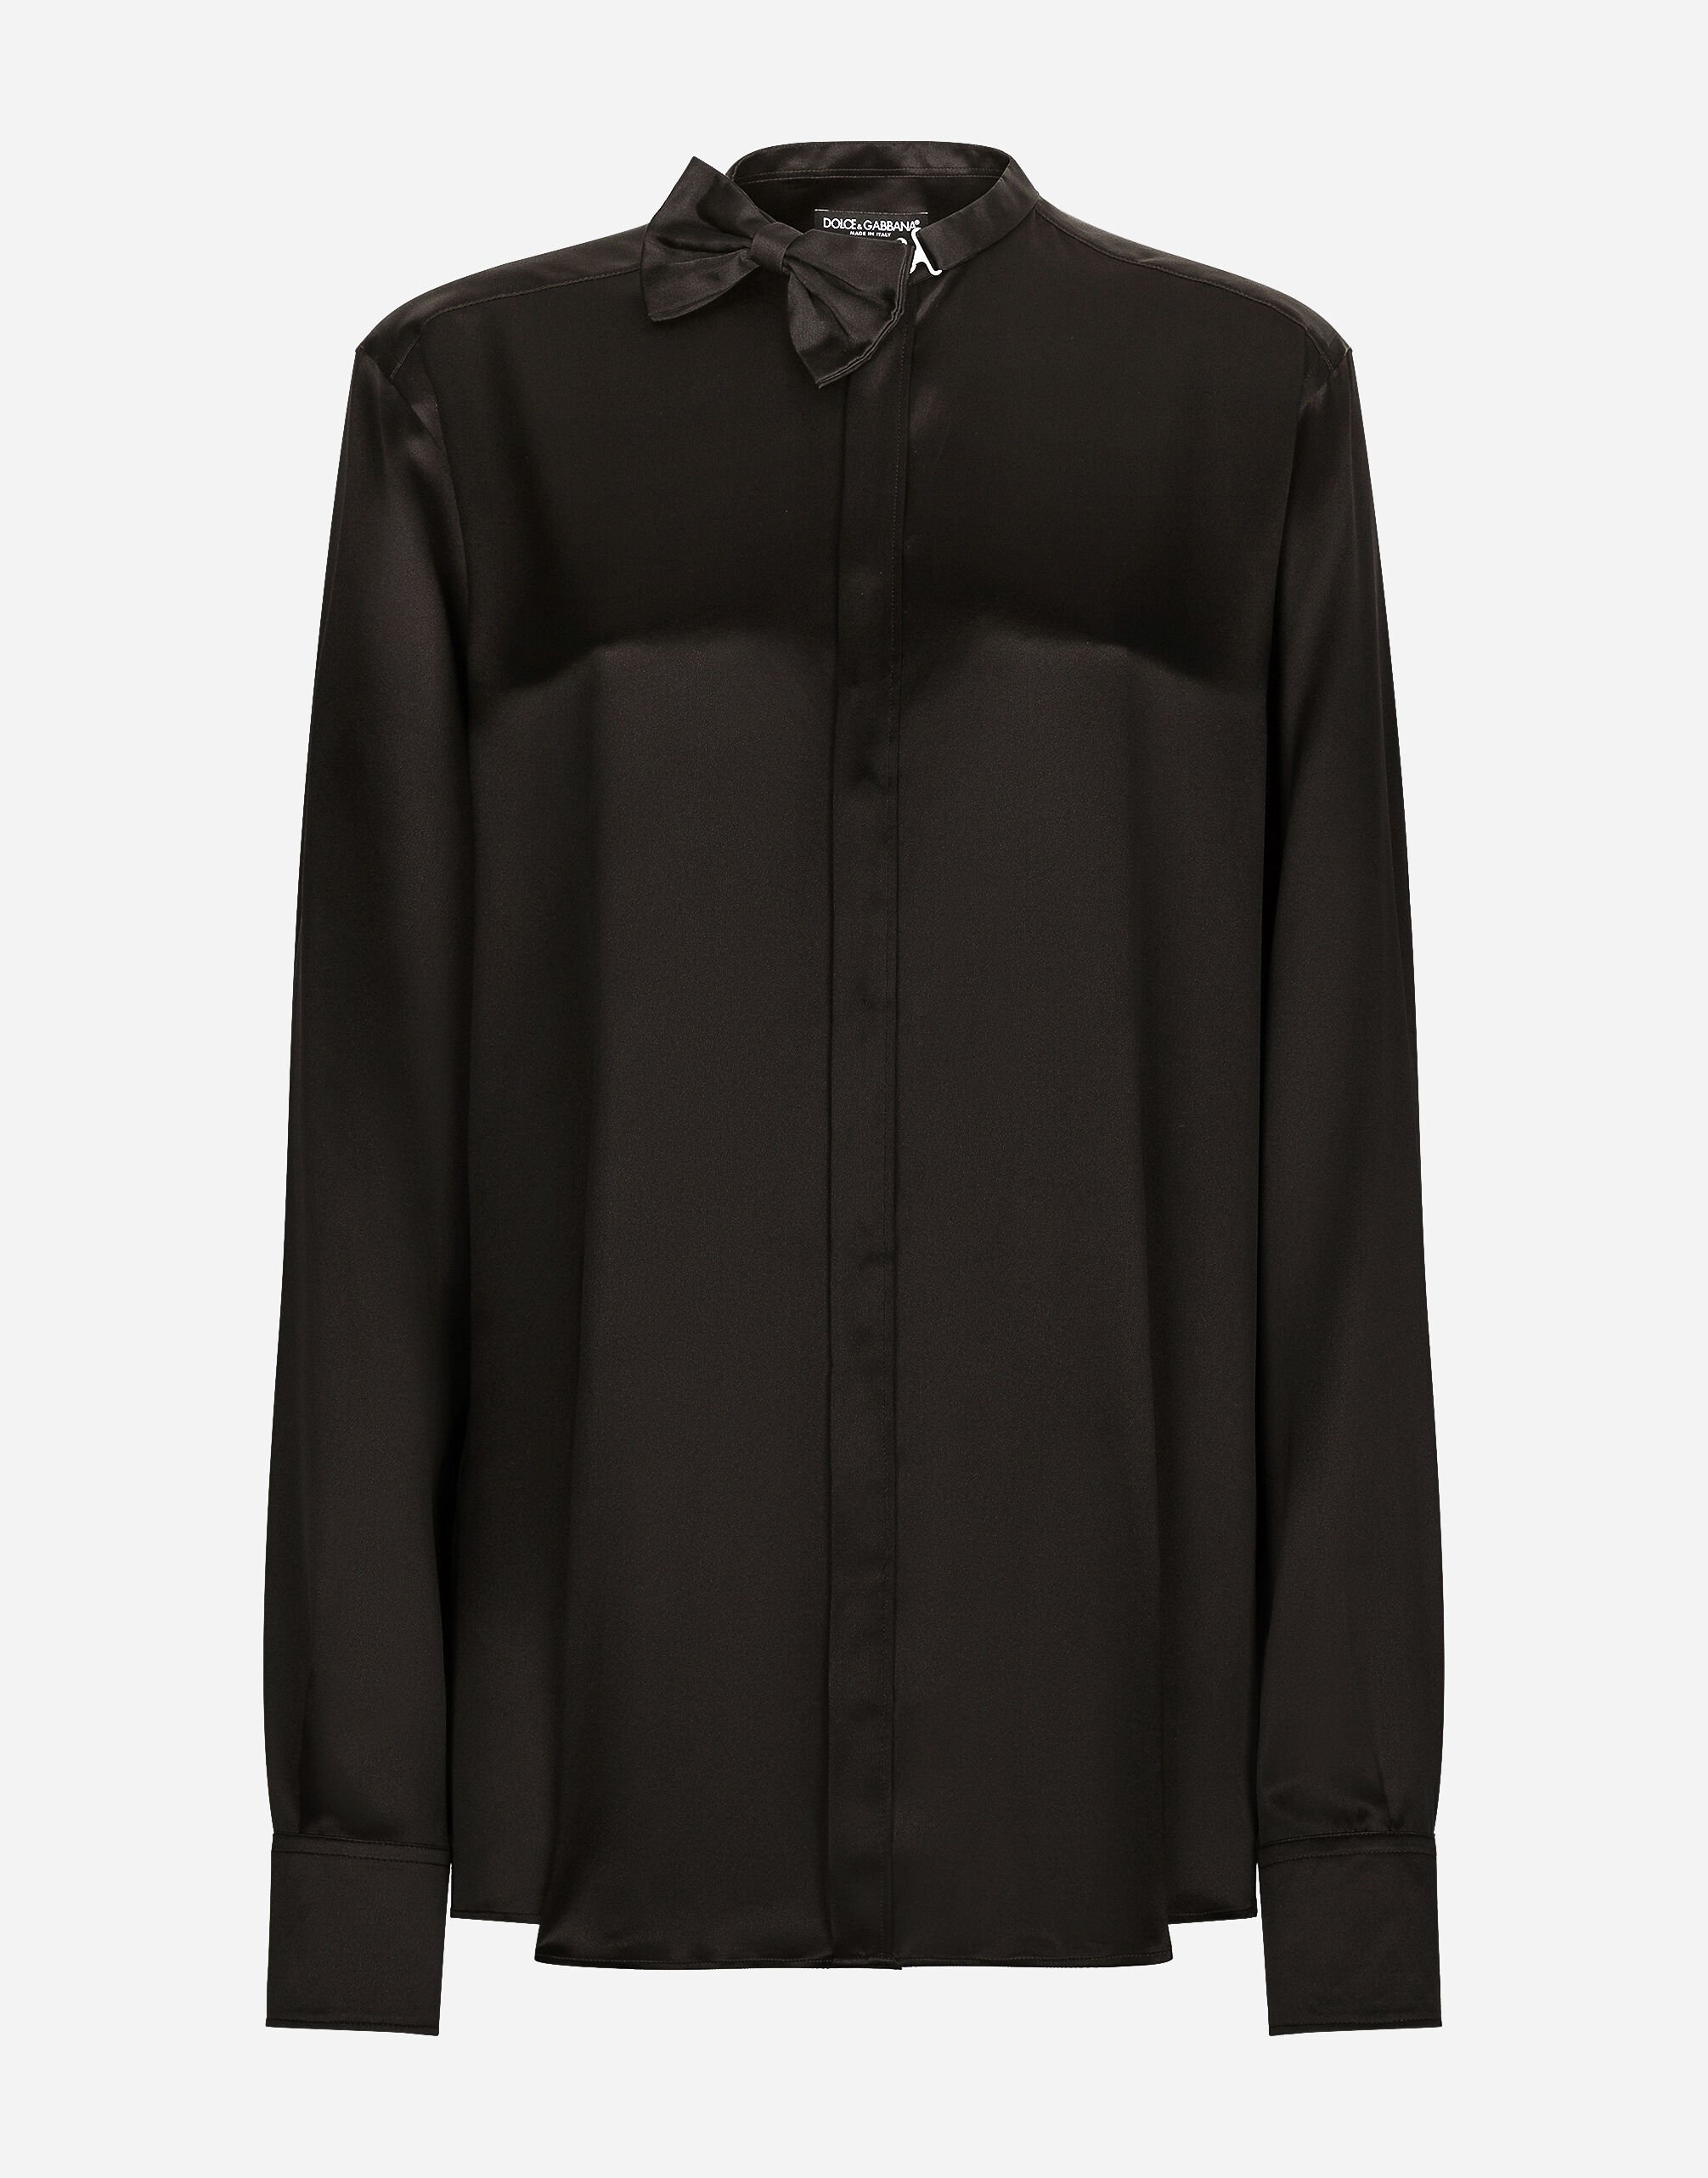 Dolce & Gabbana 胸饰细节缎布衬衫 黑 BB6711AV893